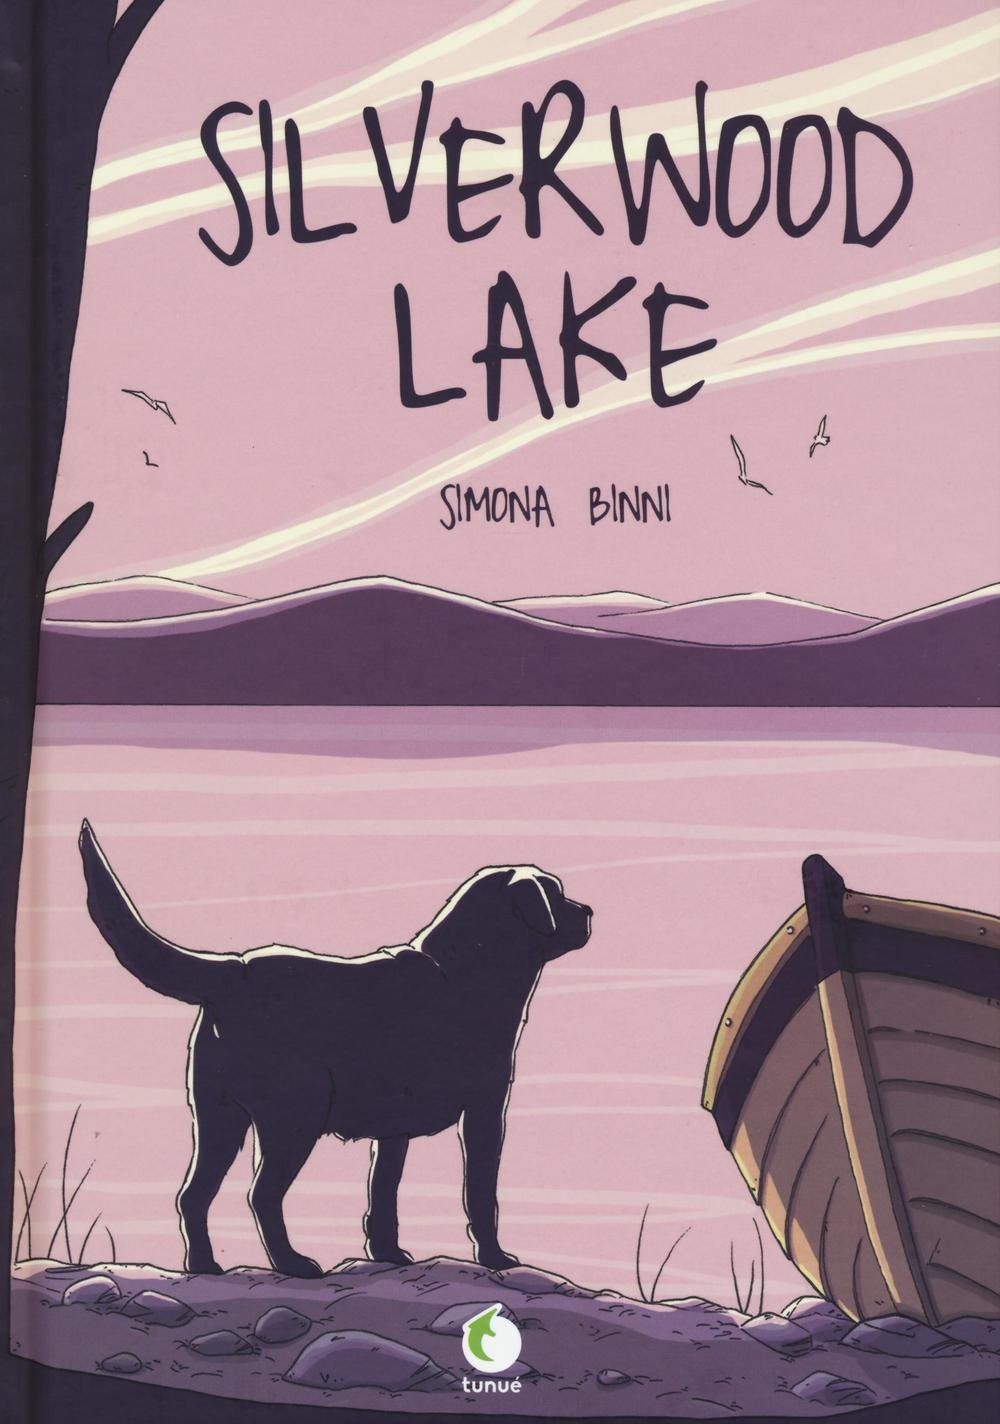 Libri Simona Binni - Silverwood Lake NUOVO SIGILLATO, EDIZIONE DEL 20/10/2016 SUBITO DISPONIBILE